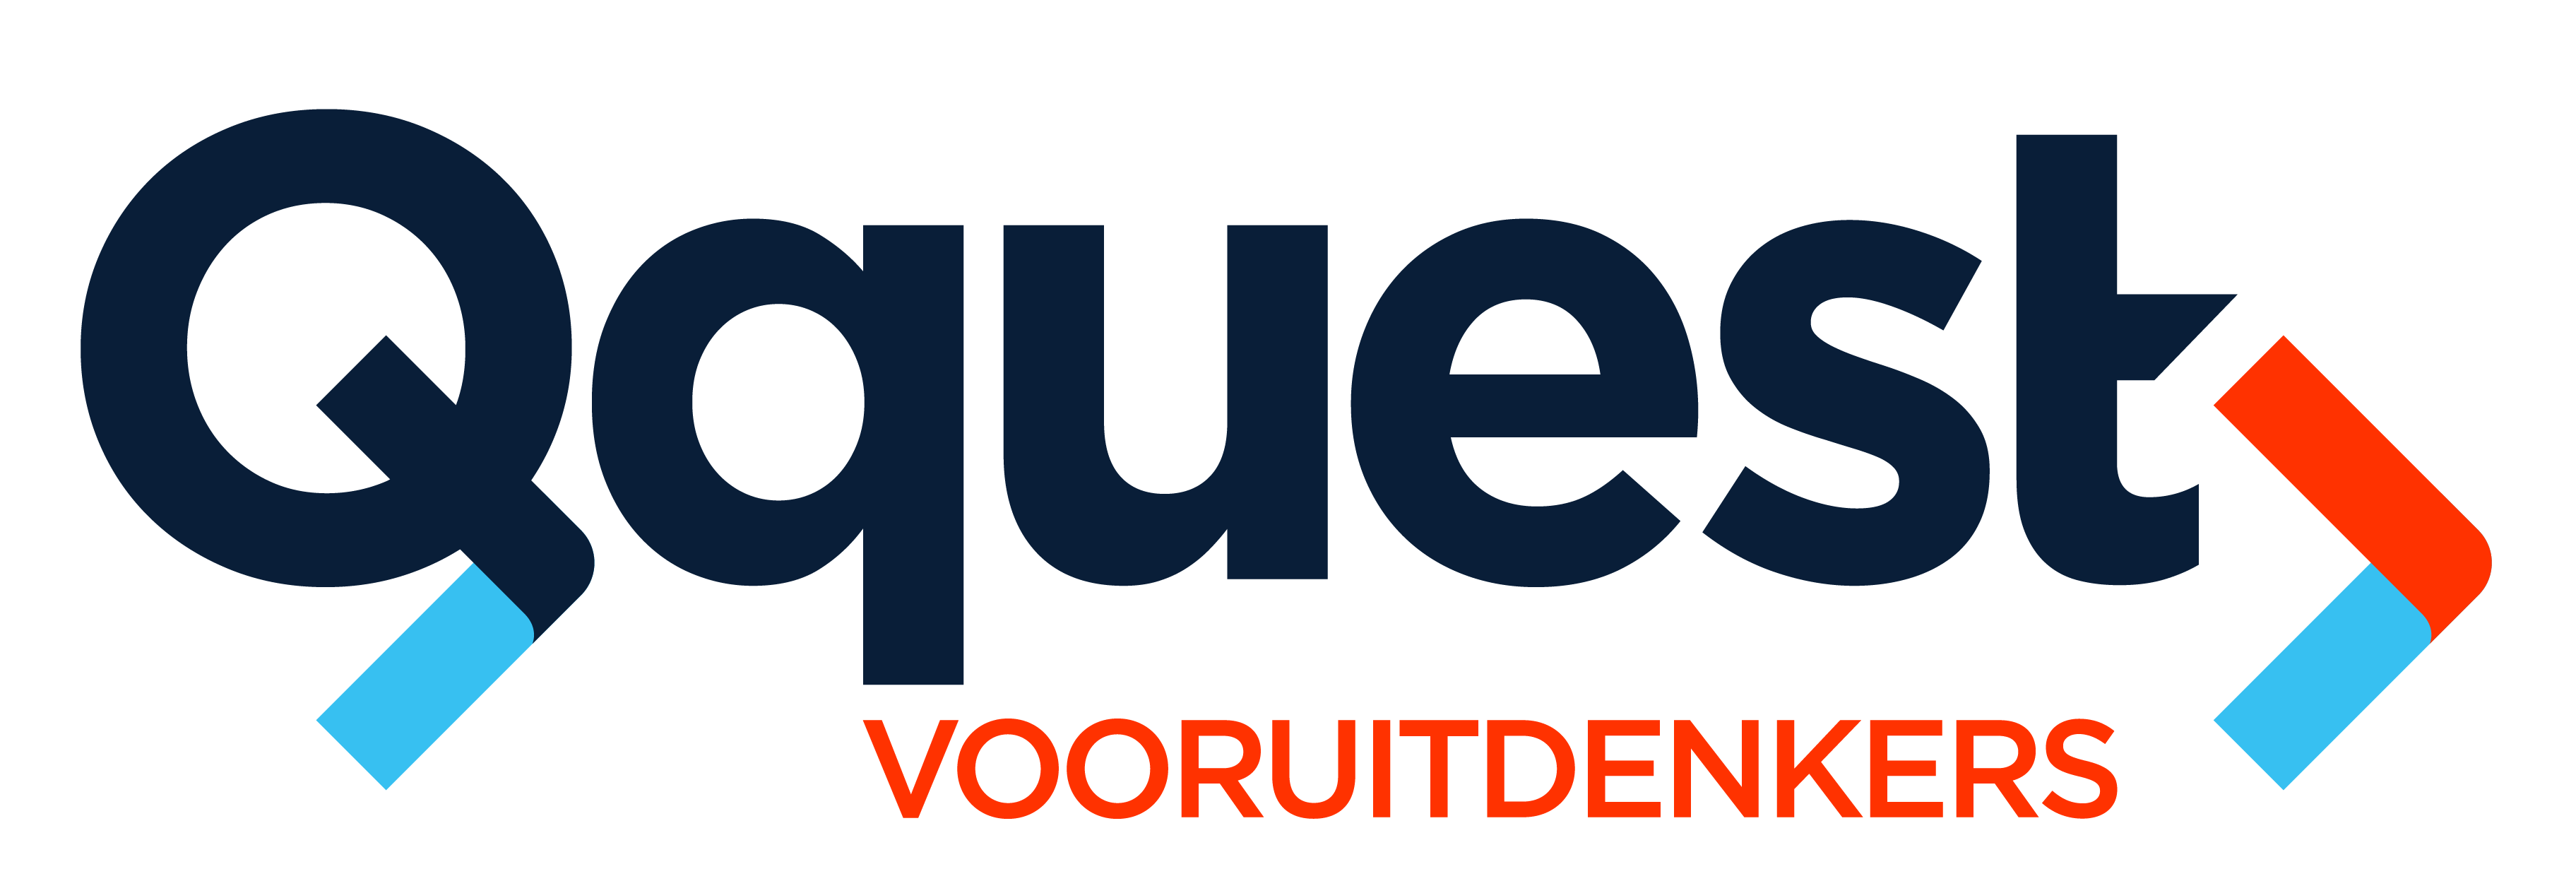 Qquest logo